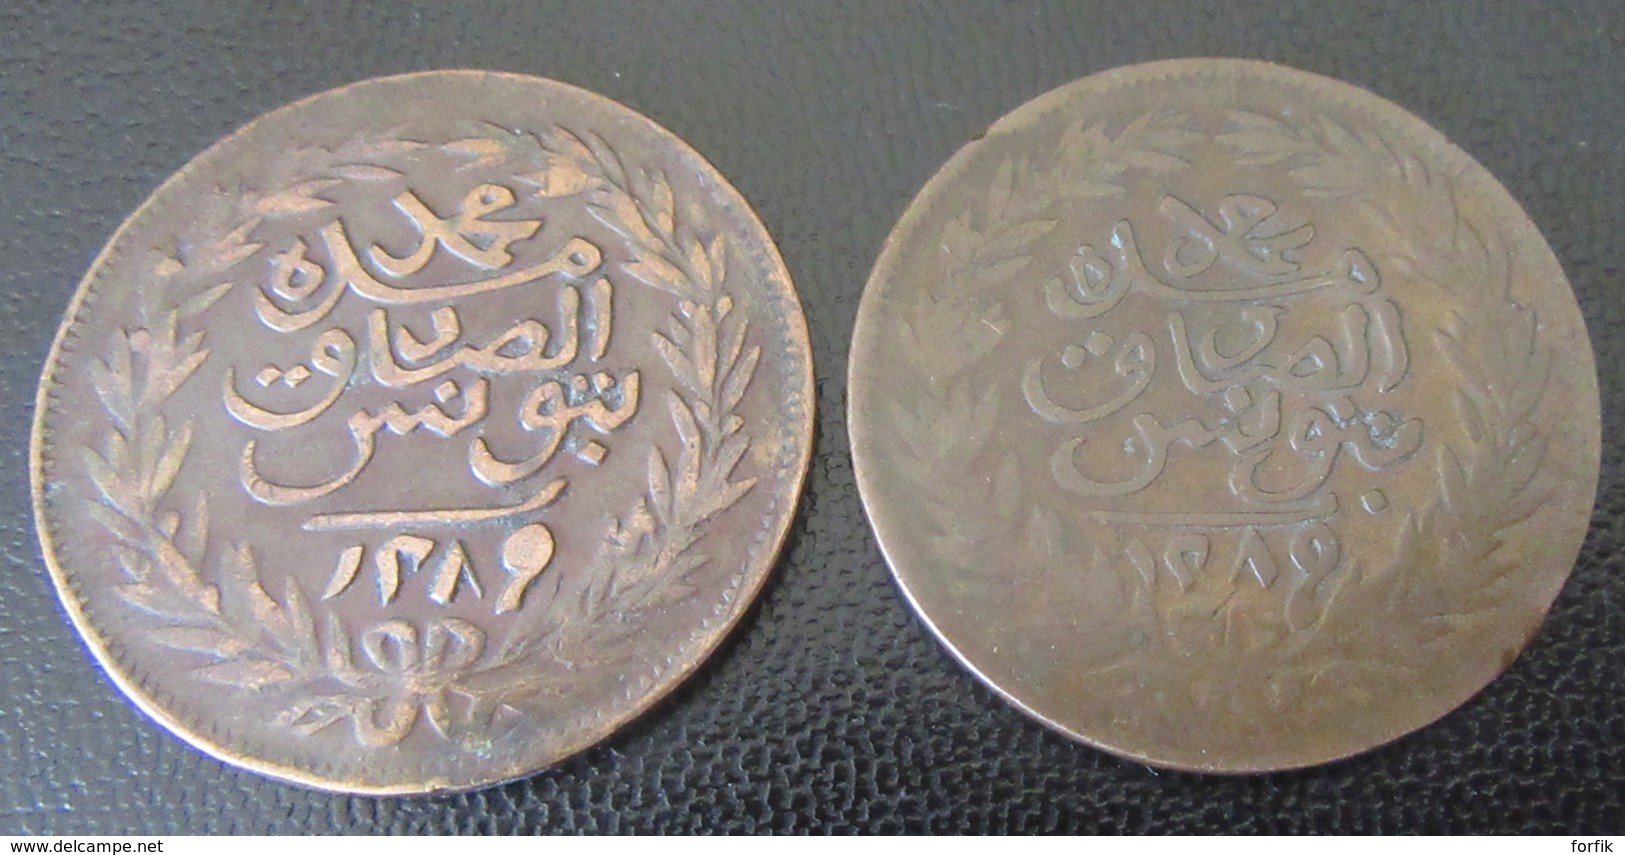 13 Monnaies orientales 19e et 20e dont Empire Ottoman (Para), Maroc (Falus), Tunisie dont protectorat français, etc...